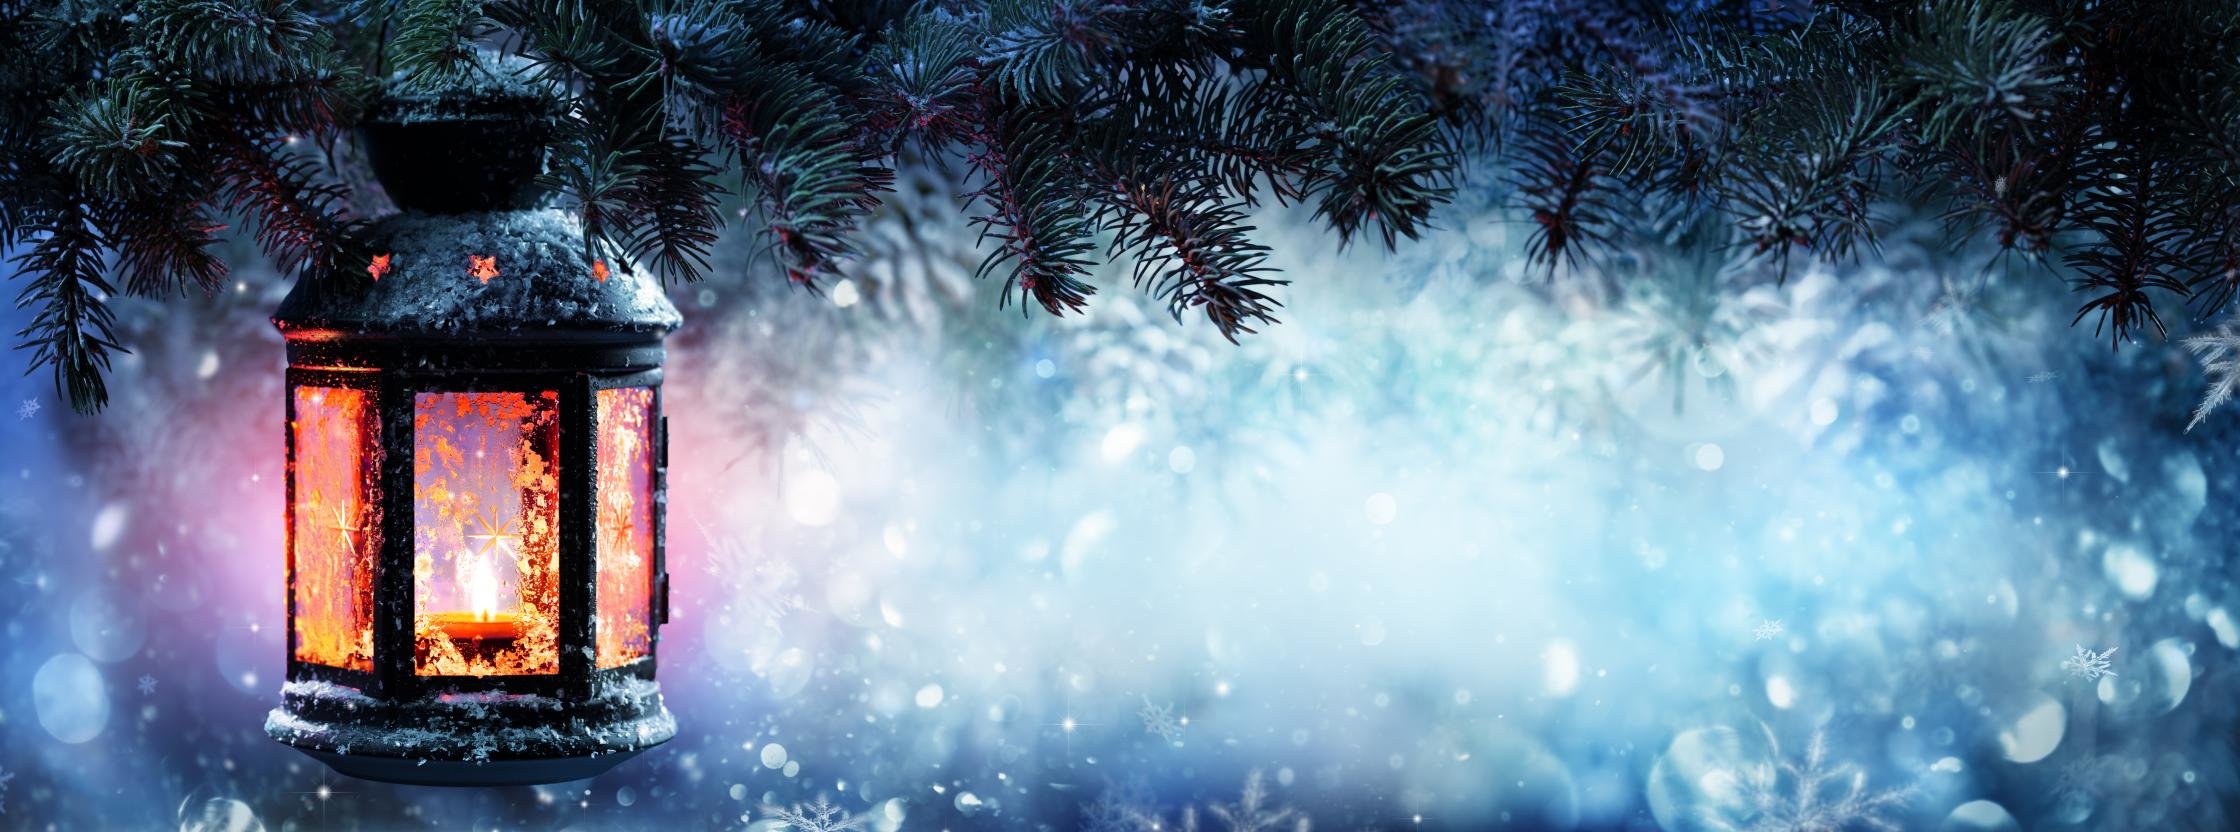 듀얼 모니터 크리스마스 벽지,푸른,하늘,겨울,나무,분위기